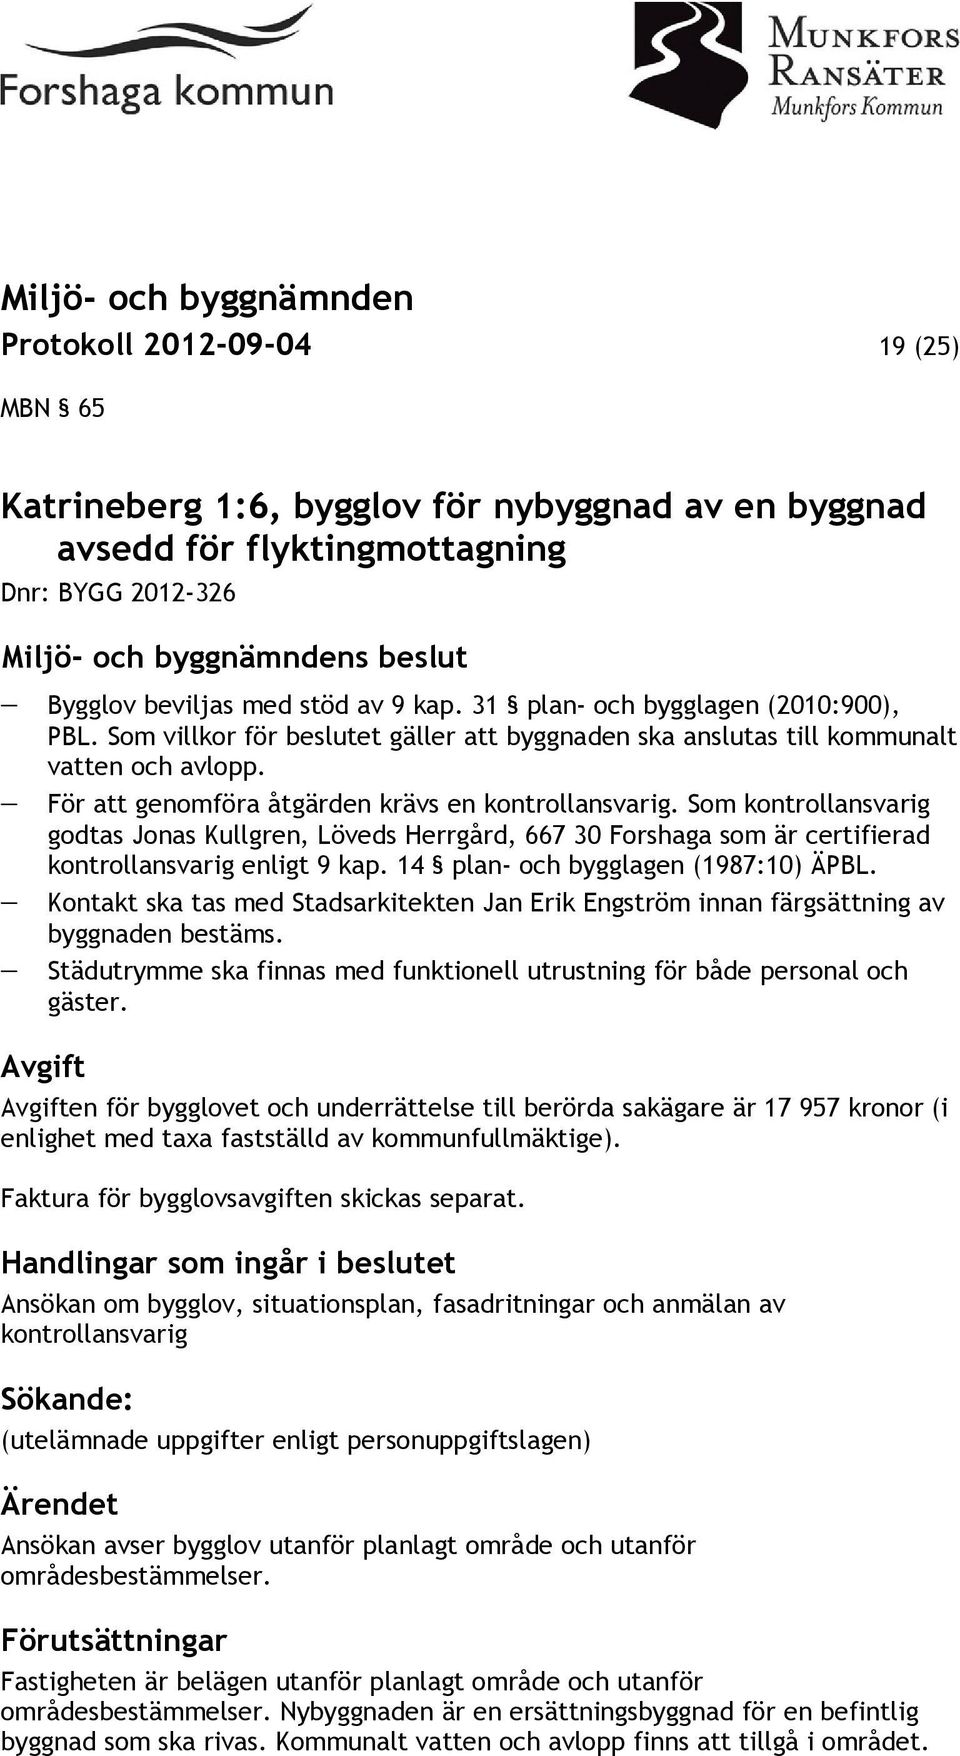 Som kontrollansvarig godtas Jonas Kullgren, Löveds Herrgård, 667 30 Forshaga som är certifierad kontrollansvarig enligt 9 kap. 14 plan- och bygglagen (1987:10) ÄPBL.